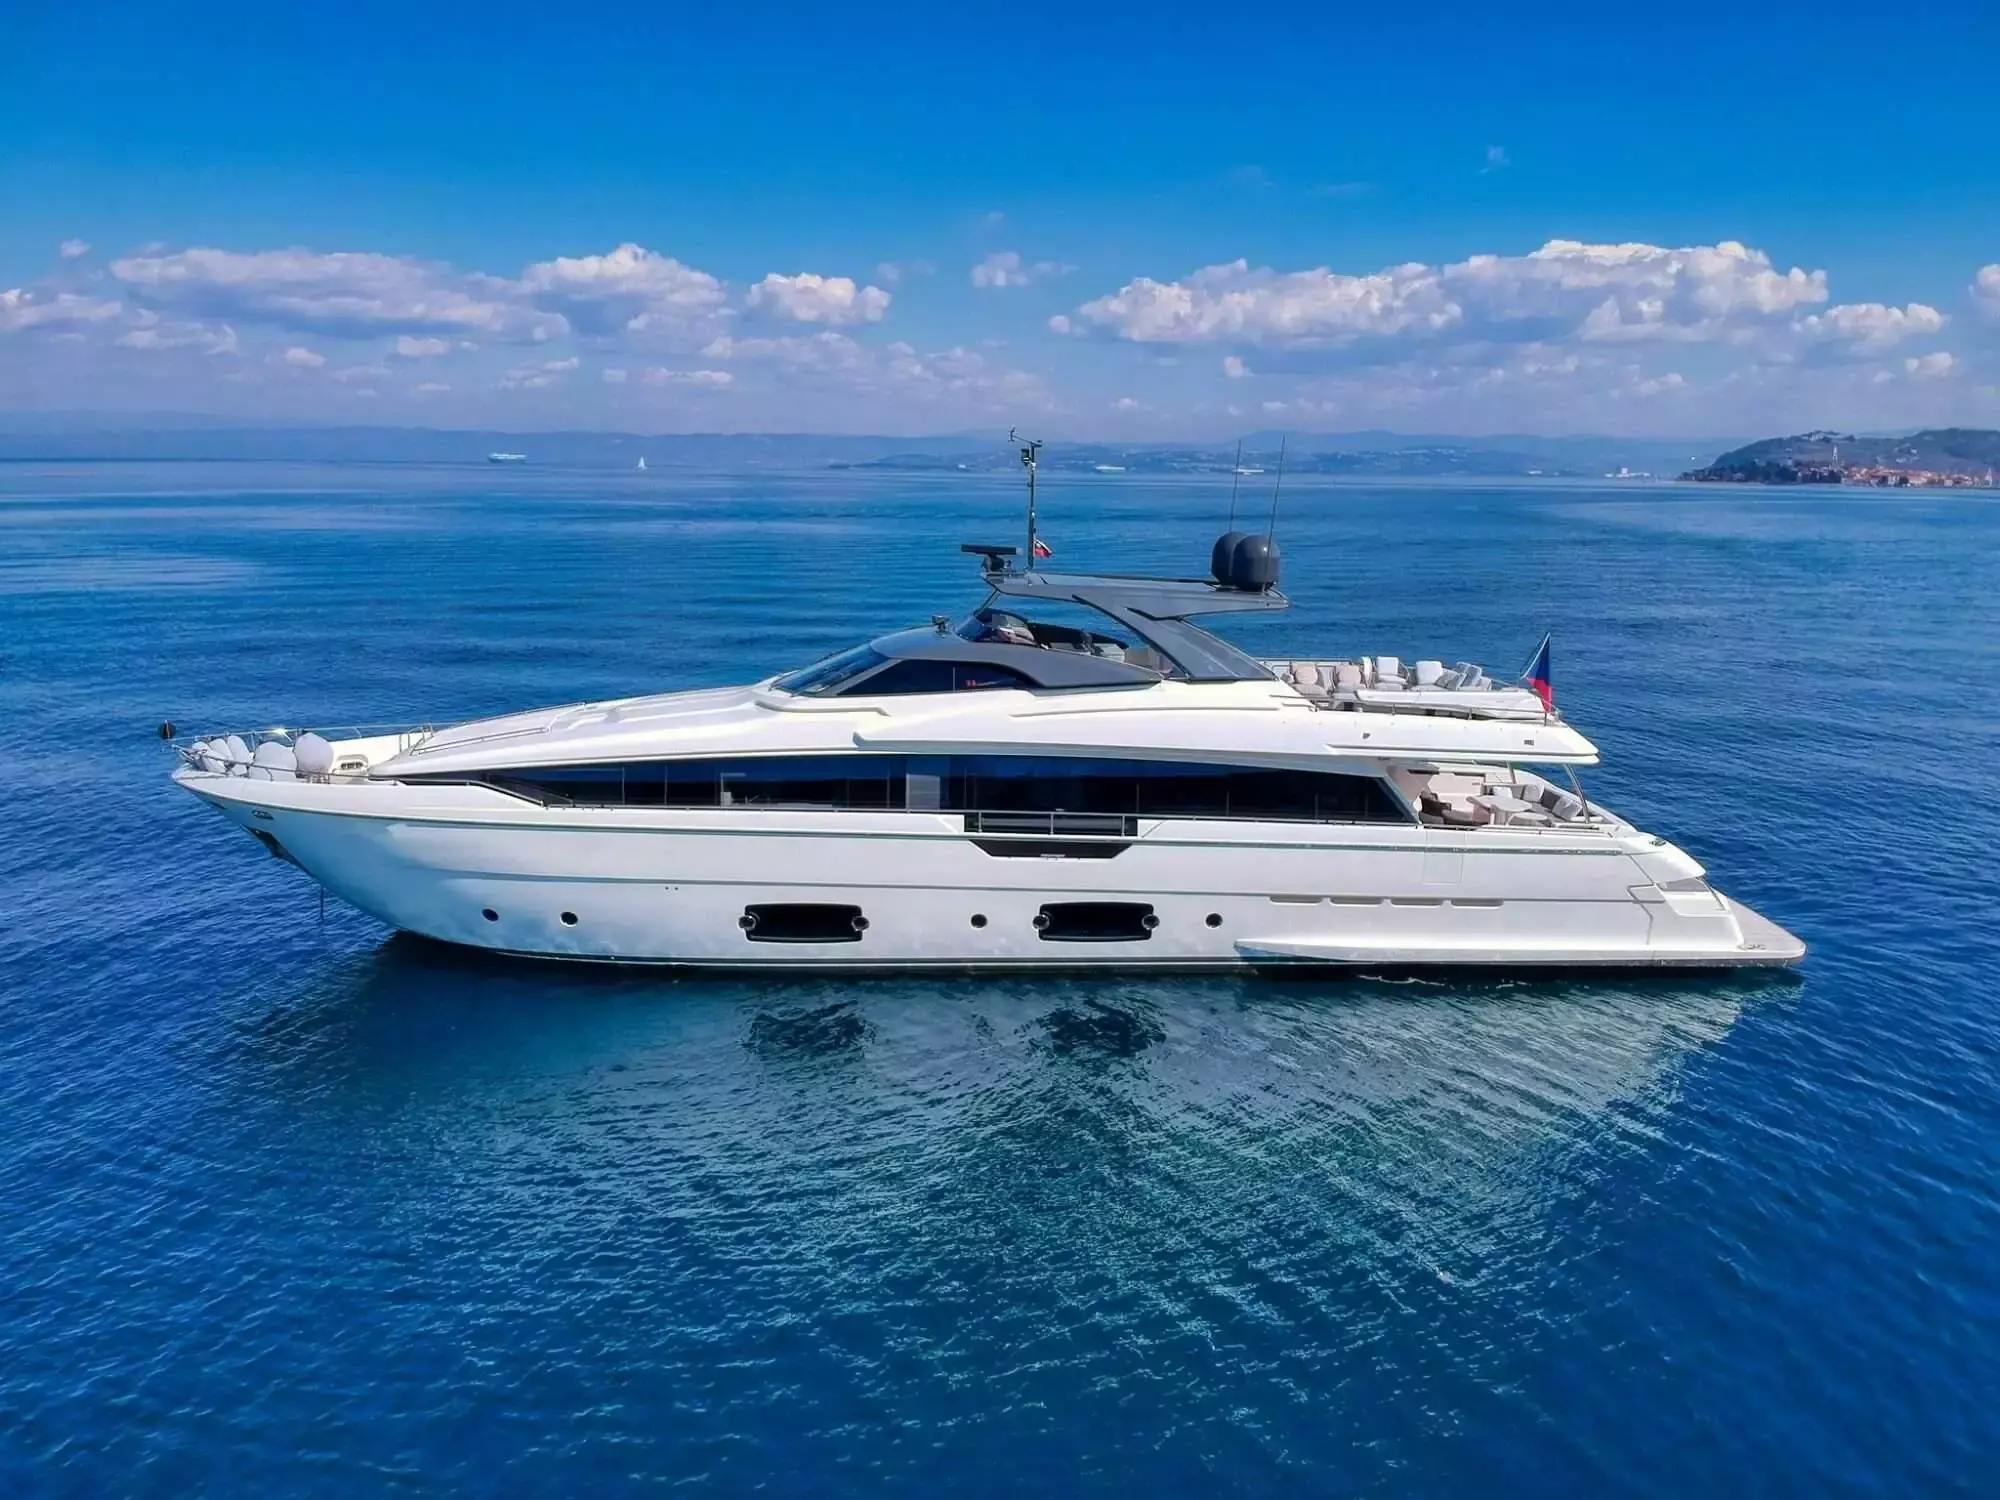 Damari by Ferretti - Special Offer for a private Superyacht Charter in Portofino with a crew